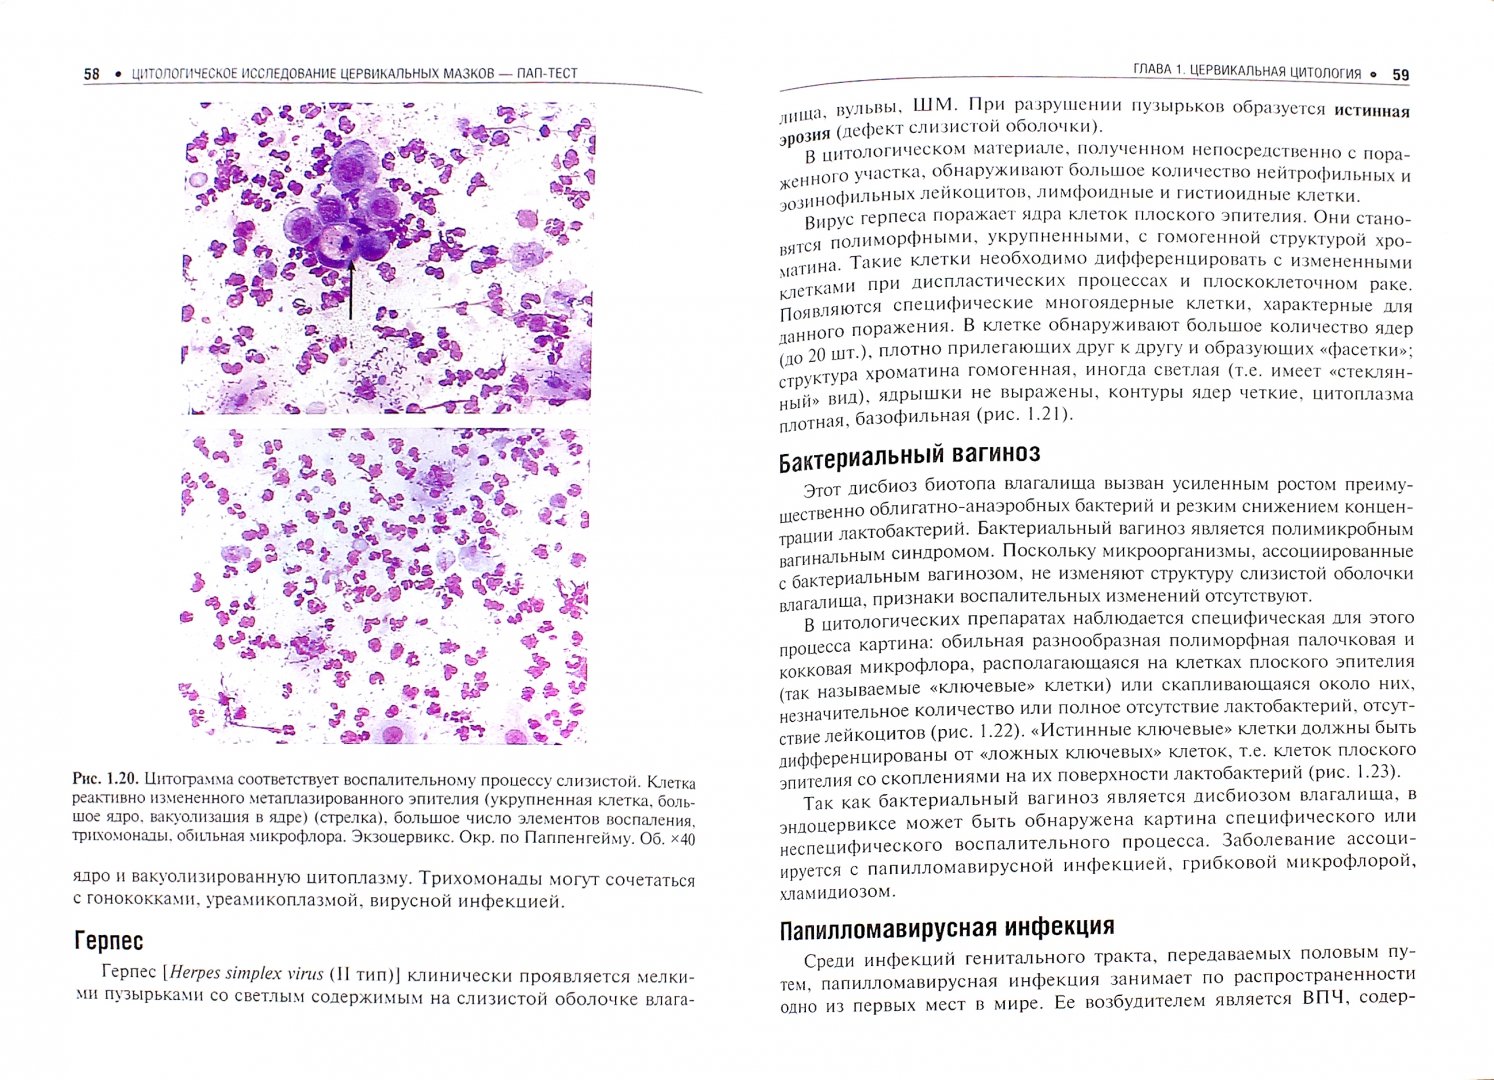 Иллюстрация 1 из 11 для Цитологическое исследование цервикальных мазков. Пап-тест - Полонская, Юрасова | Лабиринт - книги. Источник: Лабиринт